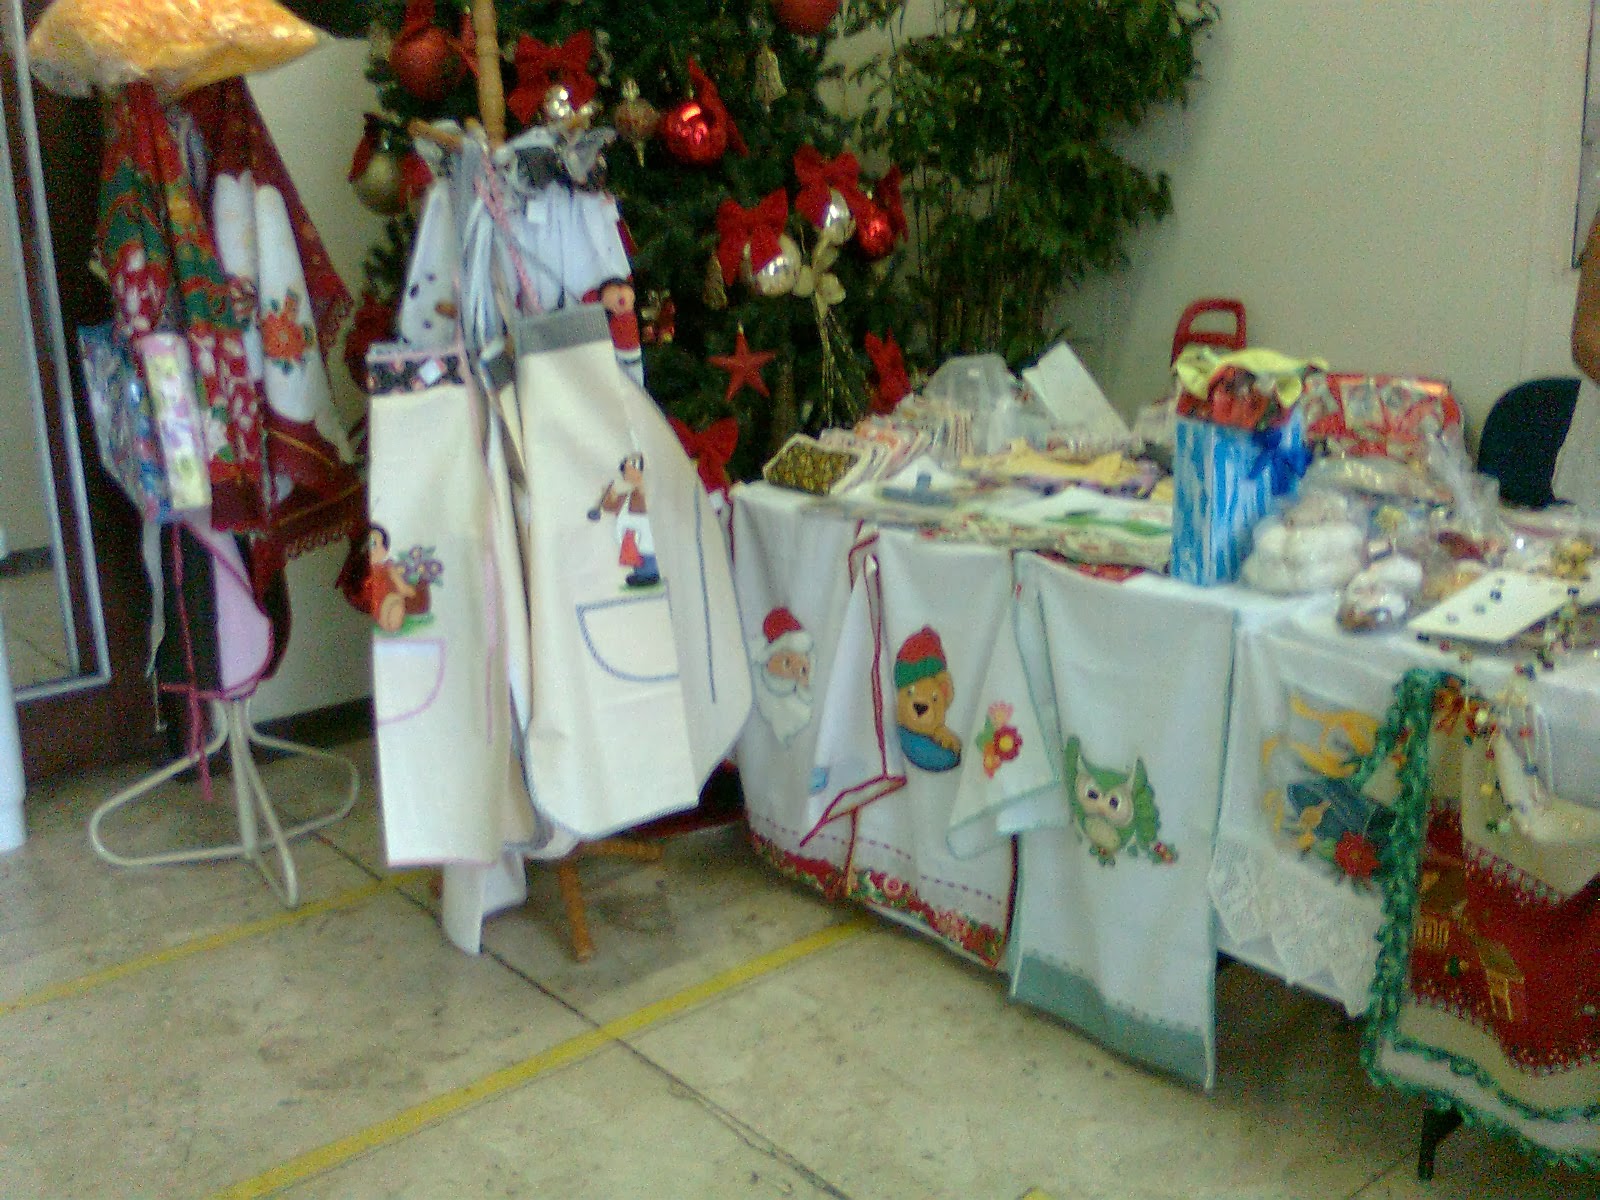 Feira de artesanato no Hospital Regional no dia 07/12/2013